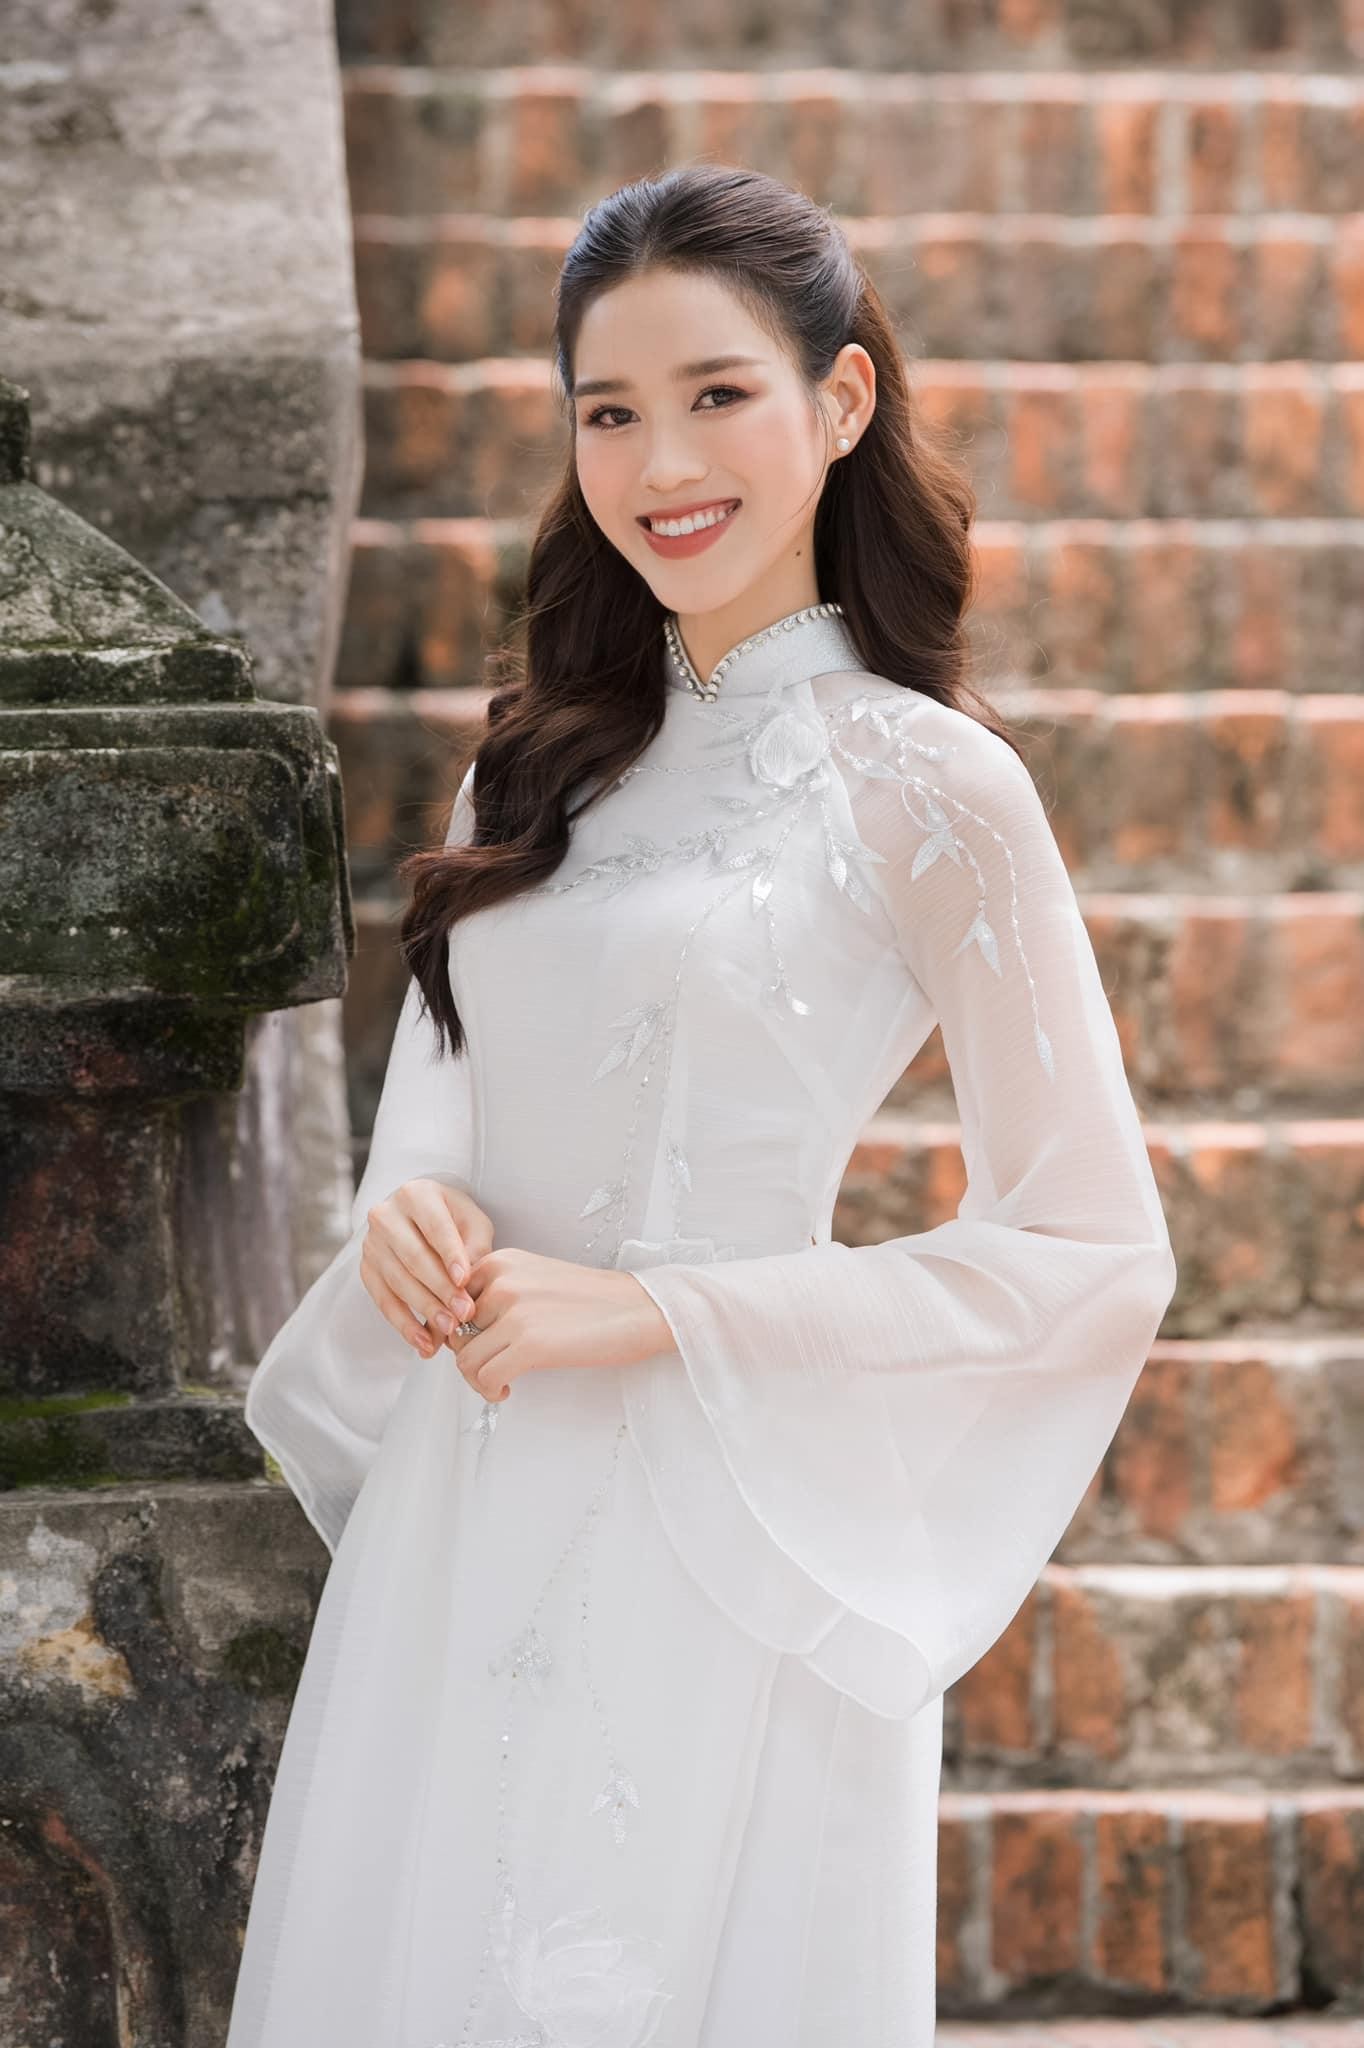 Hoa hậu Đỗ Thị Hà đẹp thuần khiết với áo dài trắng - Ảnh 5.